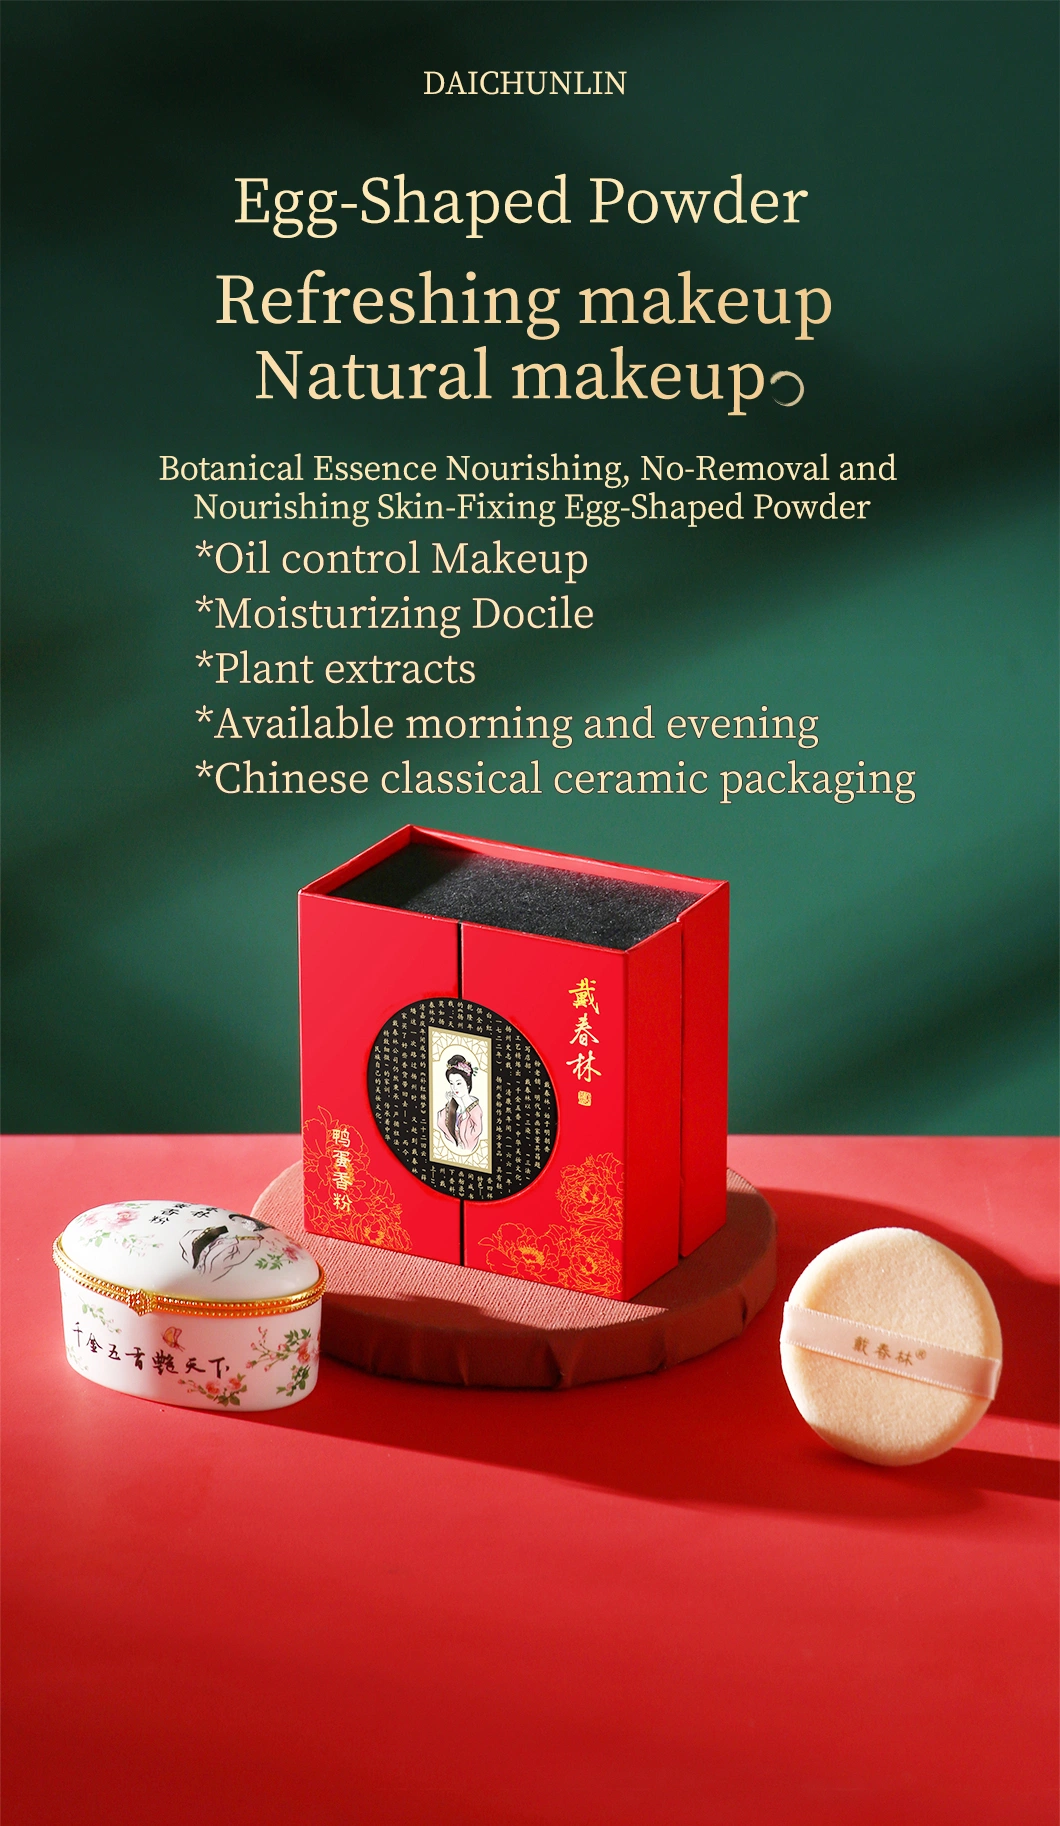 Ancient Chinese Royal Facial Powder Beauty Powder Makeup